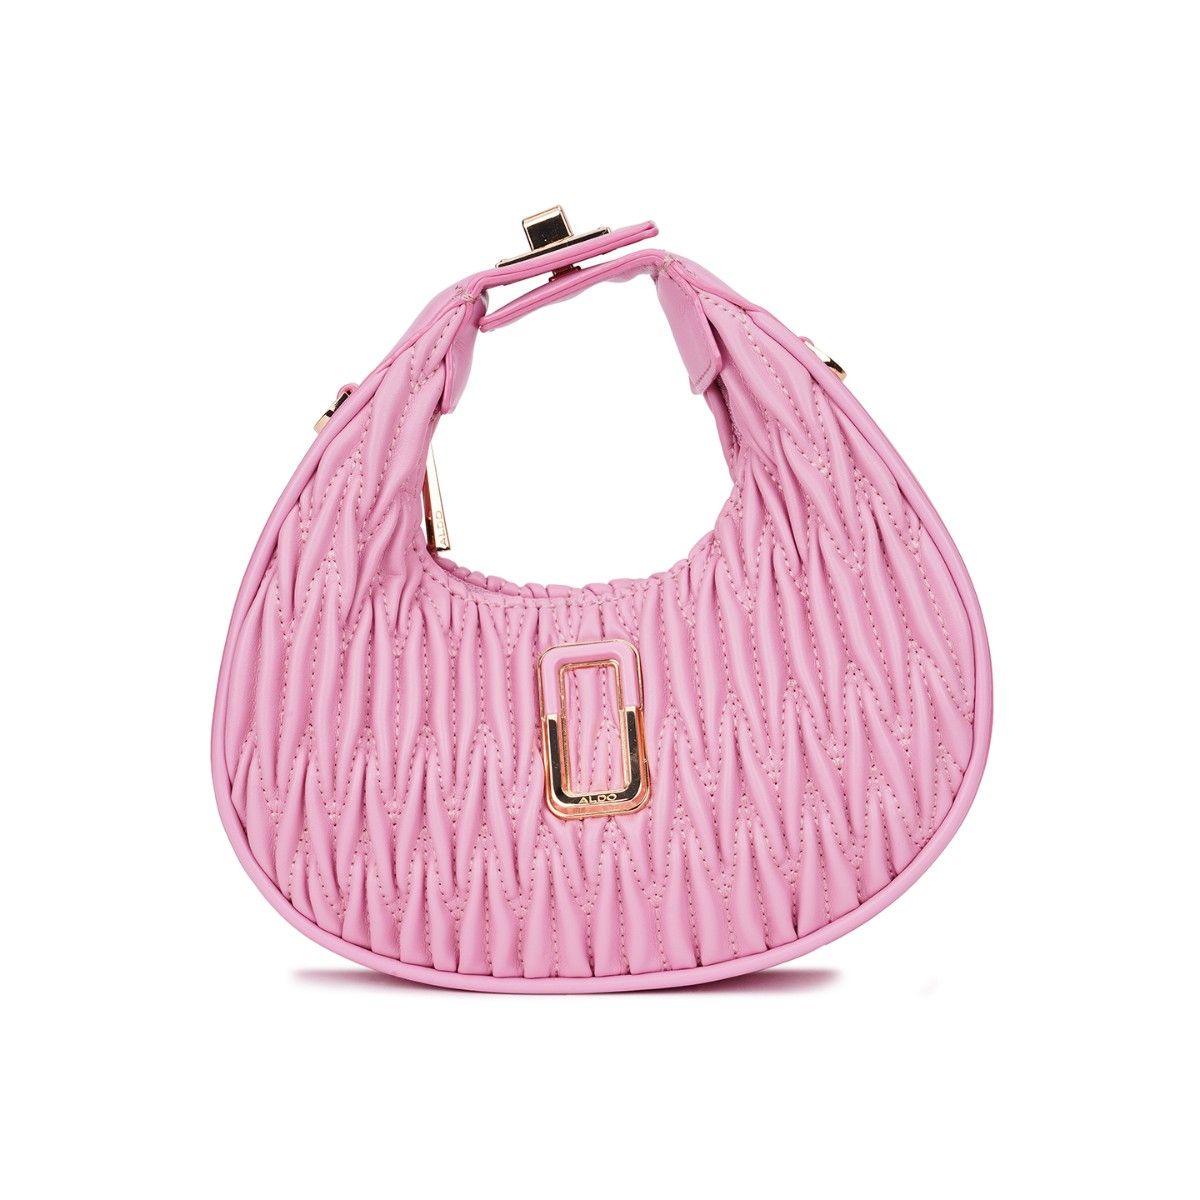 Buy ALDO Women Pink Handbag Pink Overflow Online @ Best Price in India |  Flipkart.com